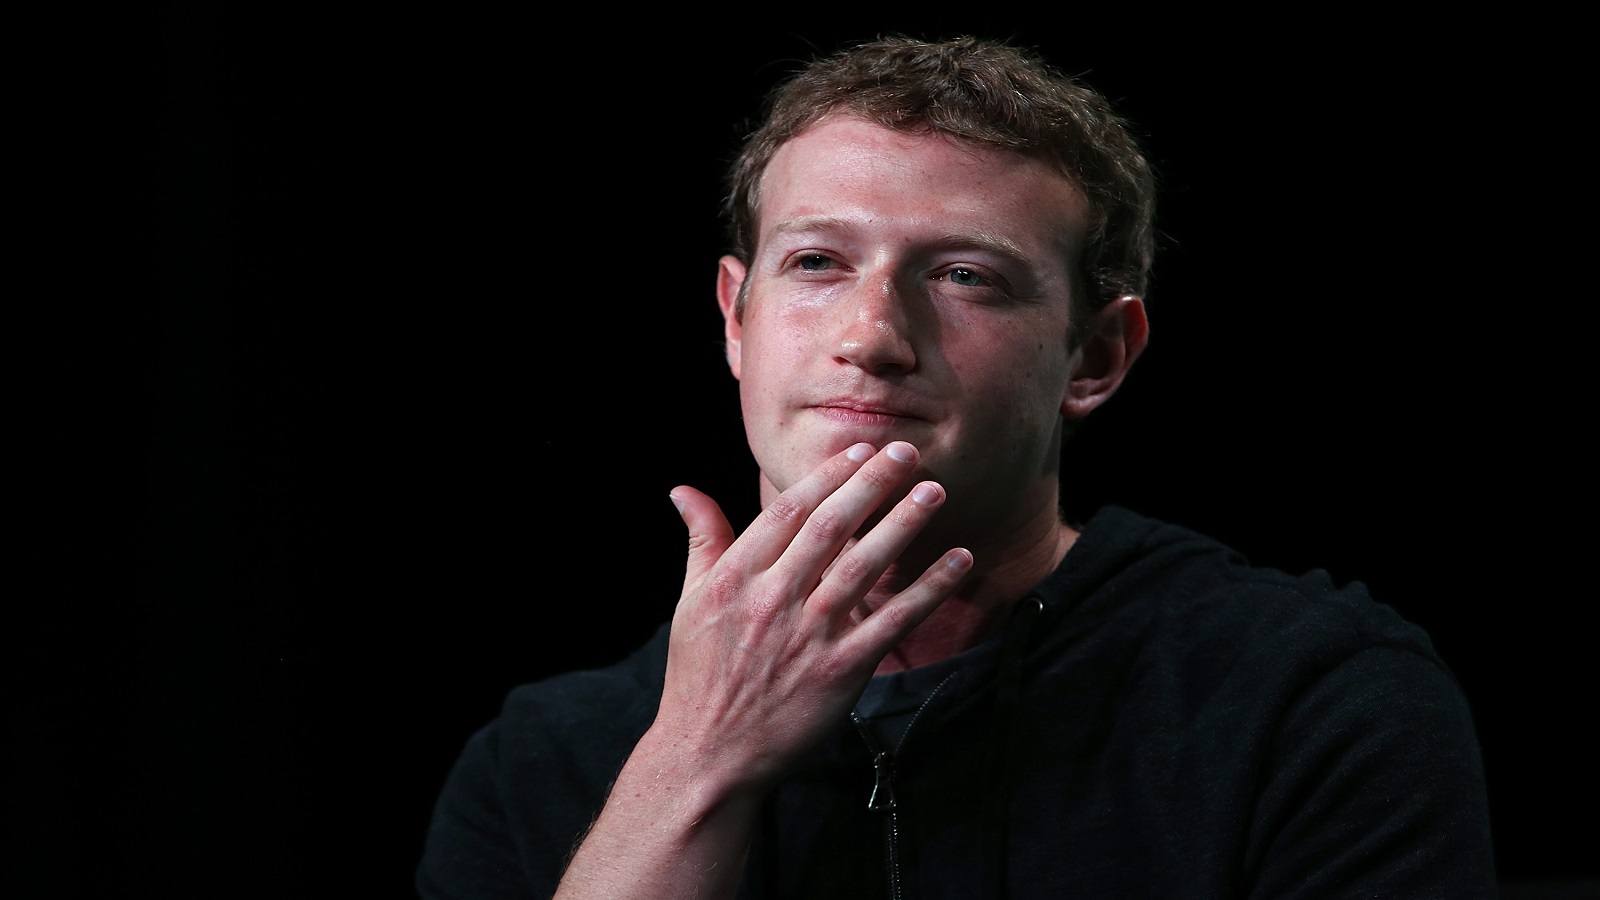 "فايسبوك" يعترف باستغلال بيانات مستخدميه.. ويعتذر